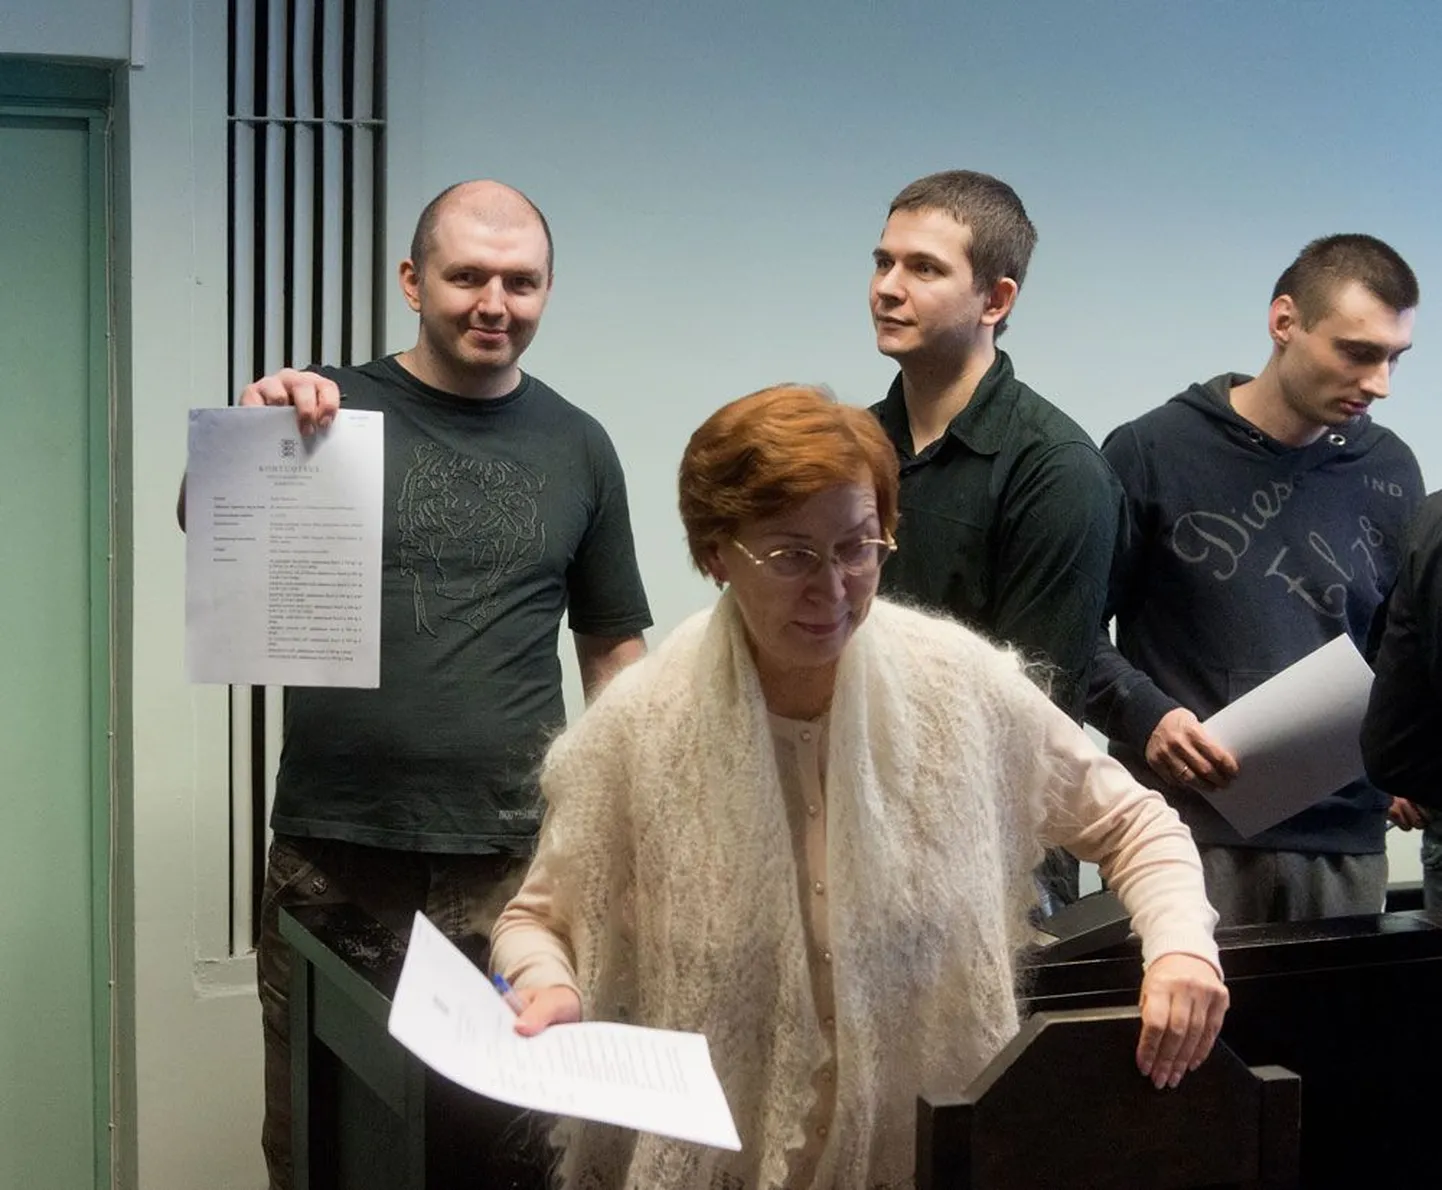 Eilse kohtuotsuse üle silmanähtavalt õnnelikud: esiplaanil Valentina Tšaštšina, tema taga vasakult Dmitri Jegorov, Konstantin Poltev ja Timur Gerassimenko.